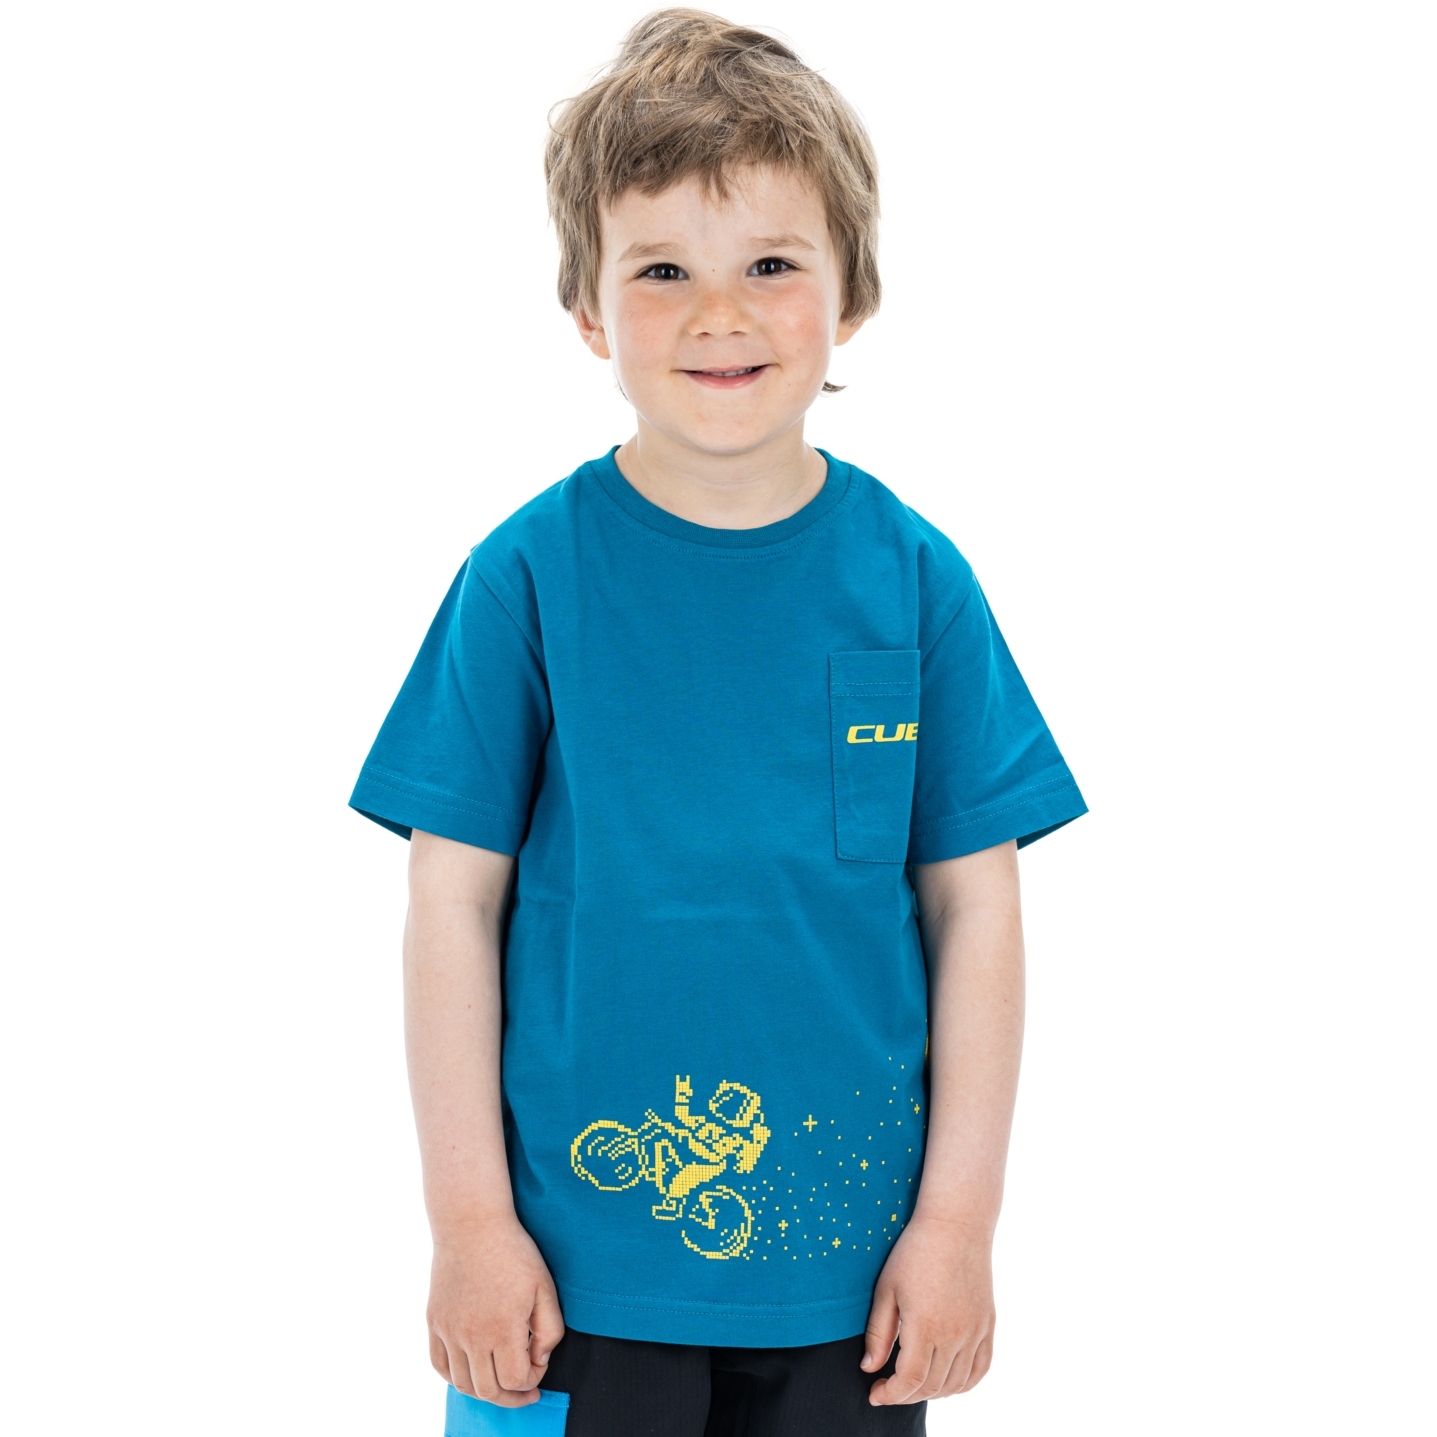 Produktbild von CUBE Organic Space Rider T-Shirt Kinder - blau